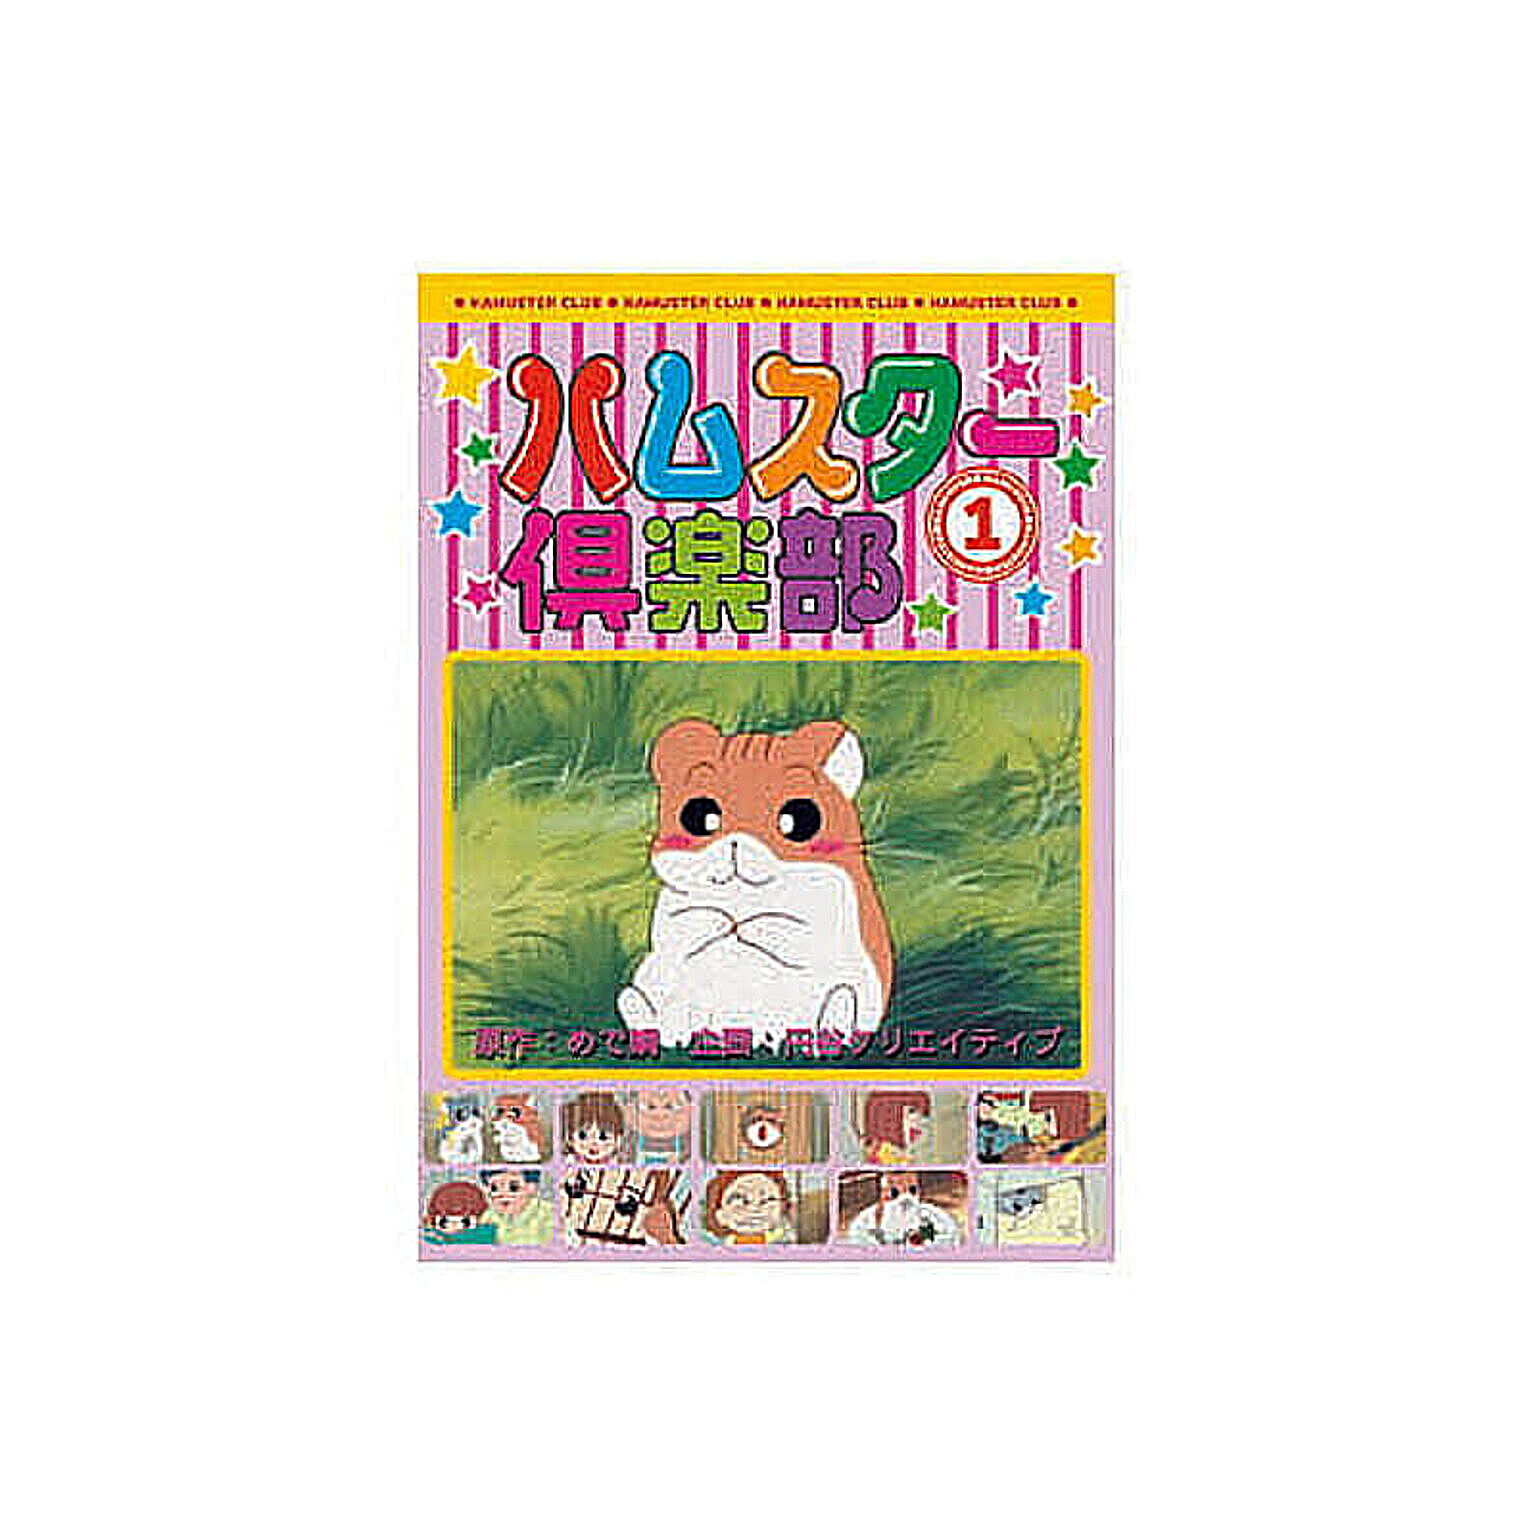 ハムスター倶楽部(1) DVD 管理No. 4961523244011